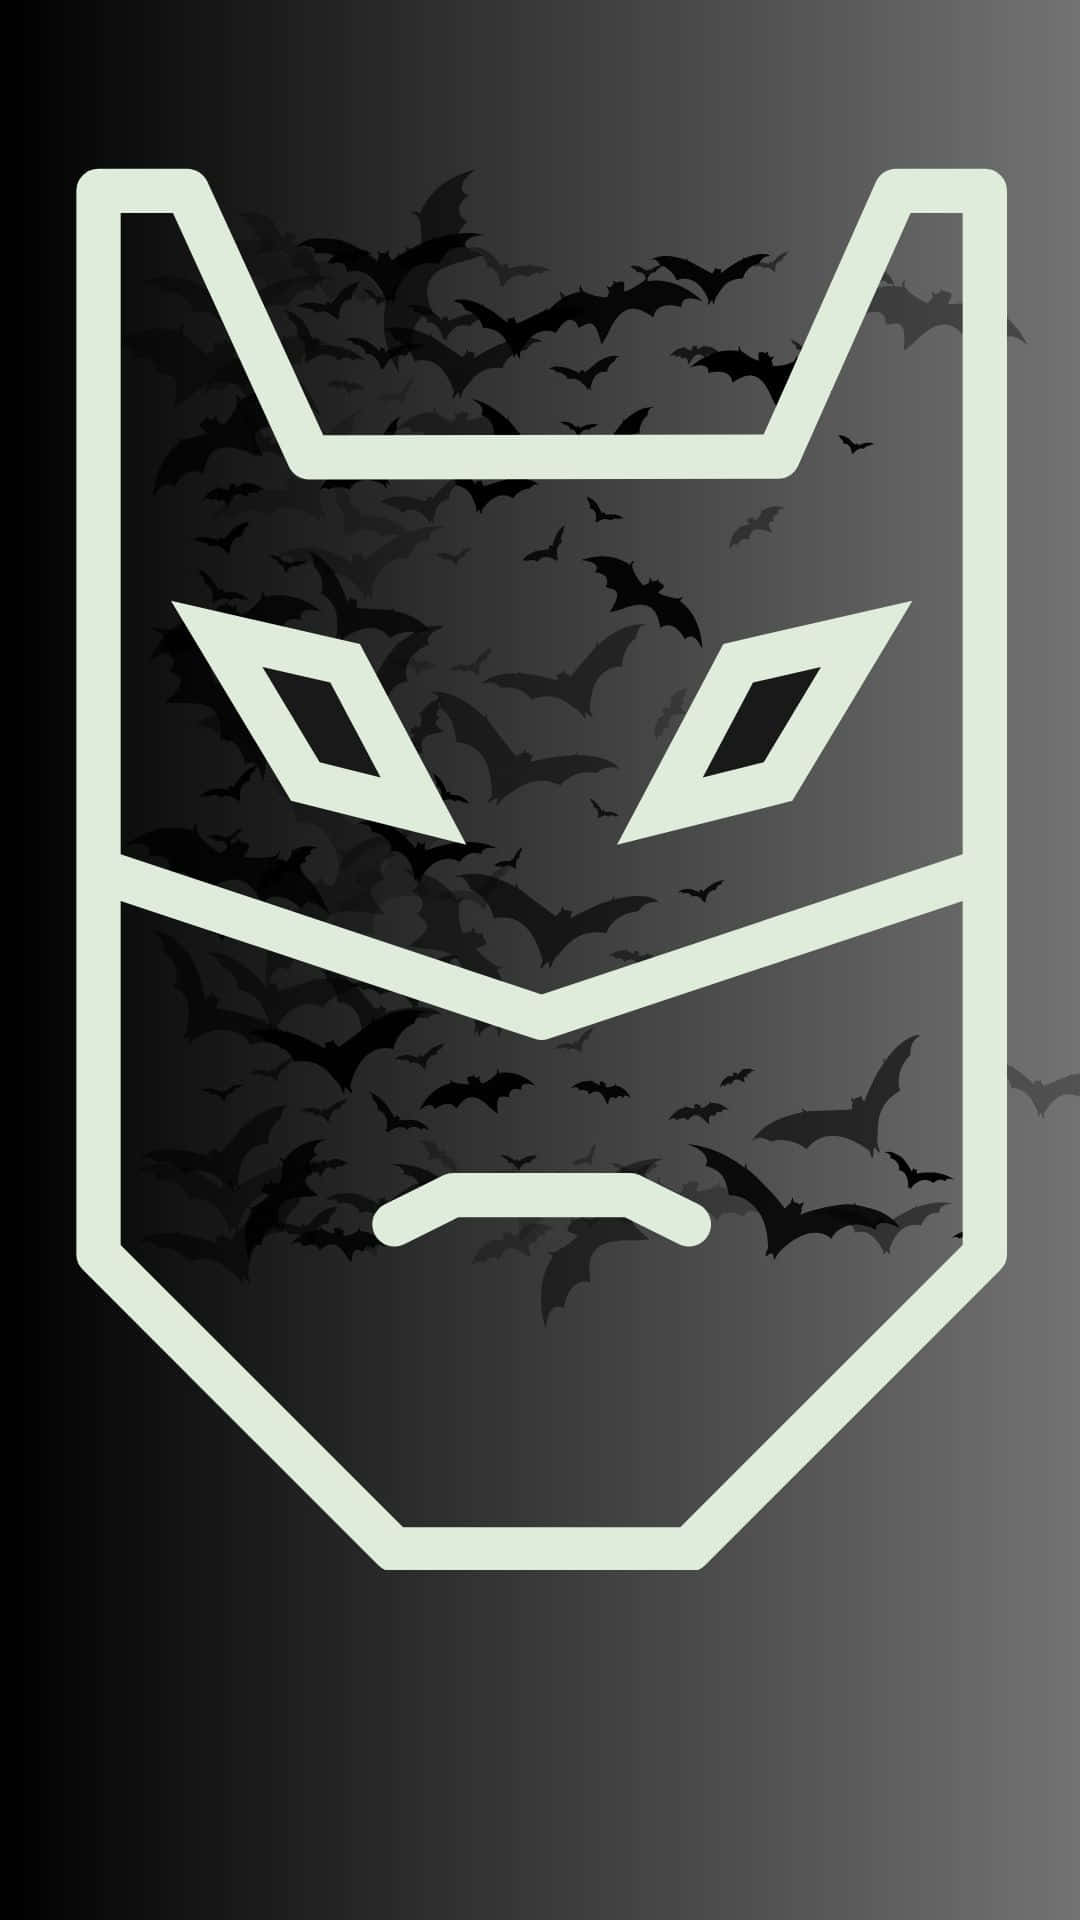 Dark Batman Superhero Mask Background